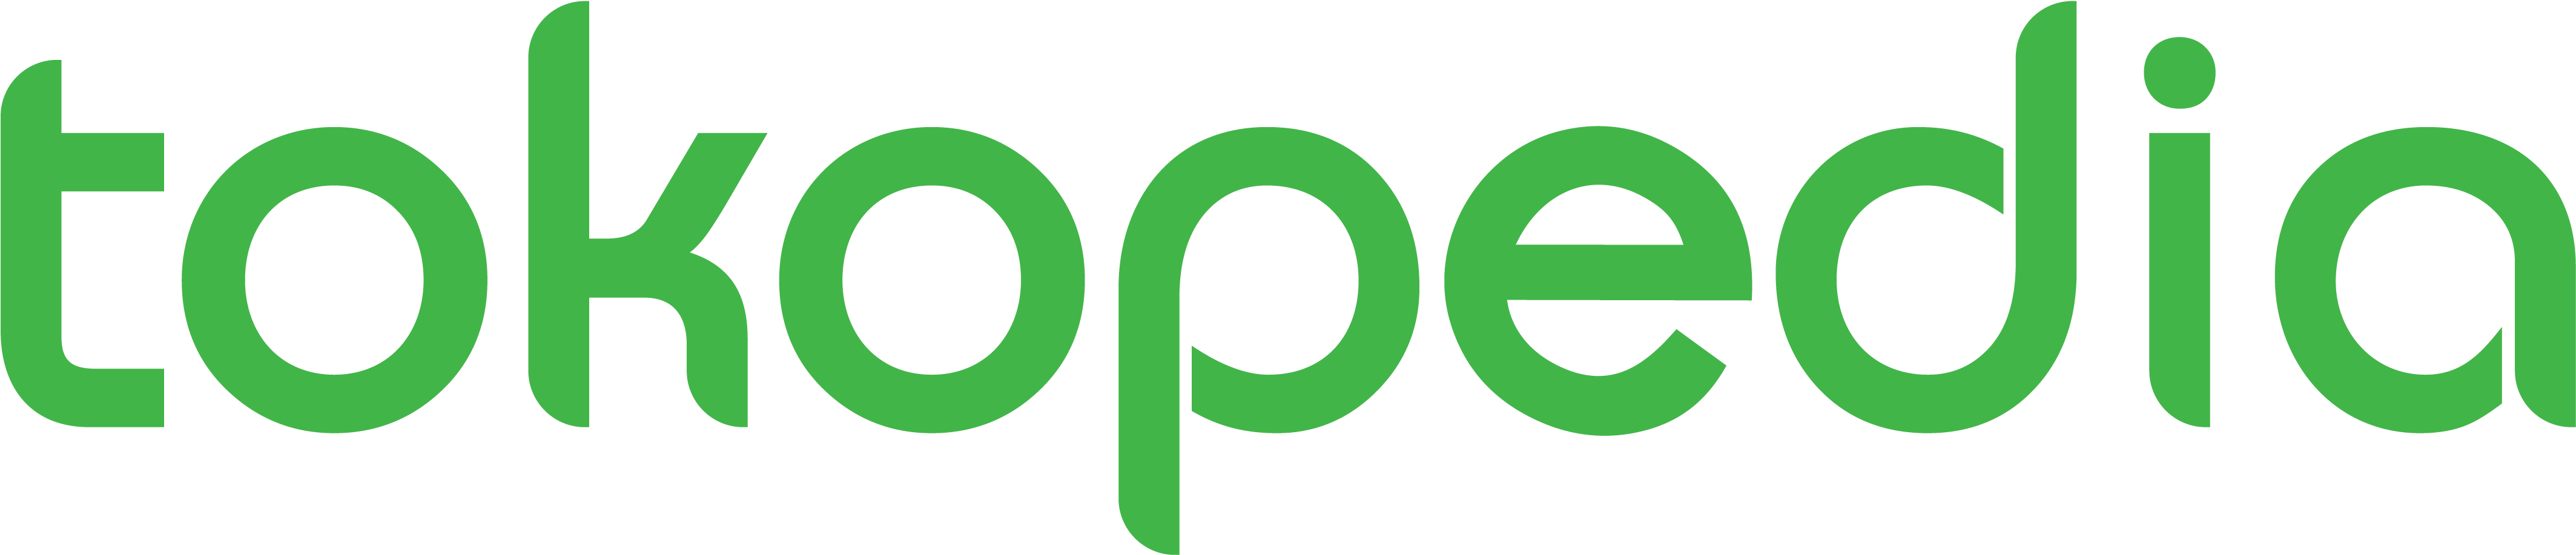 Tokopedia Logo Png - Tokopedia Logo Png (4267x937)